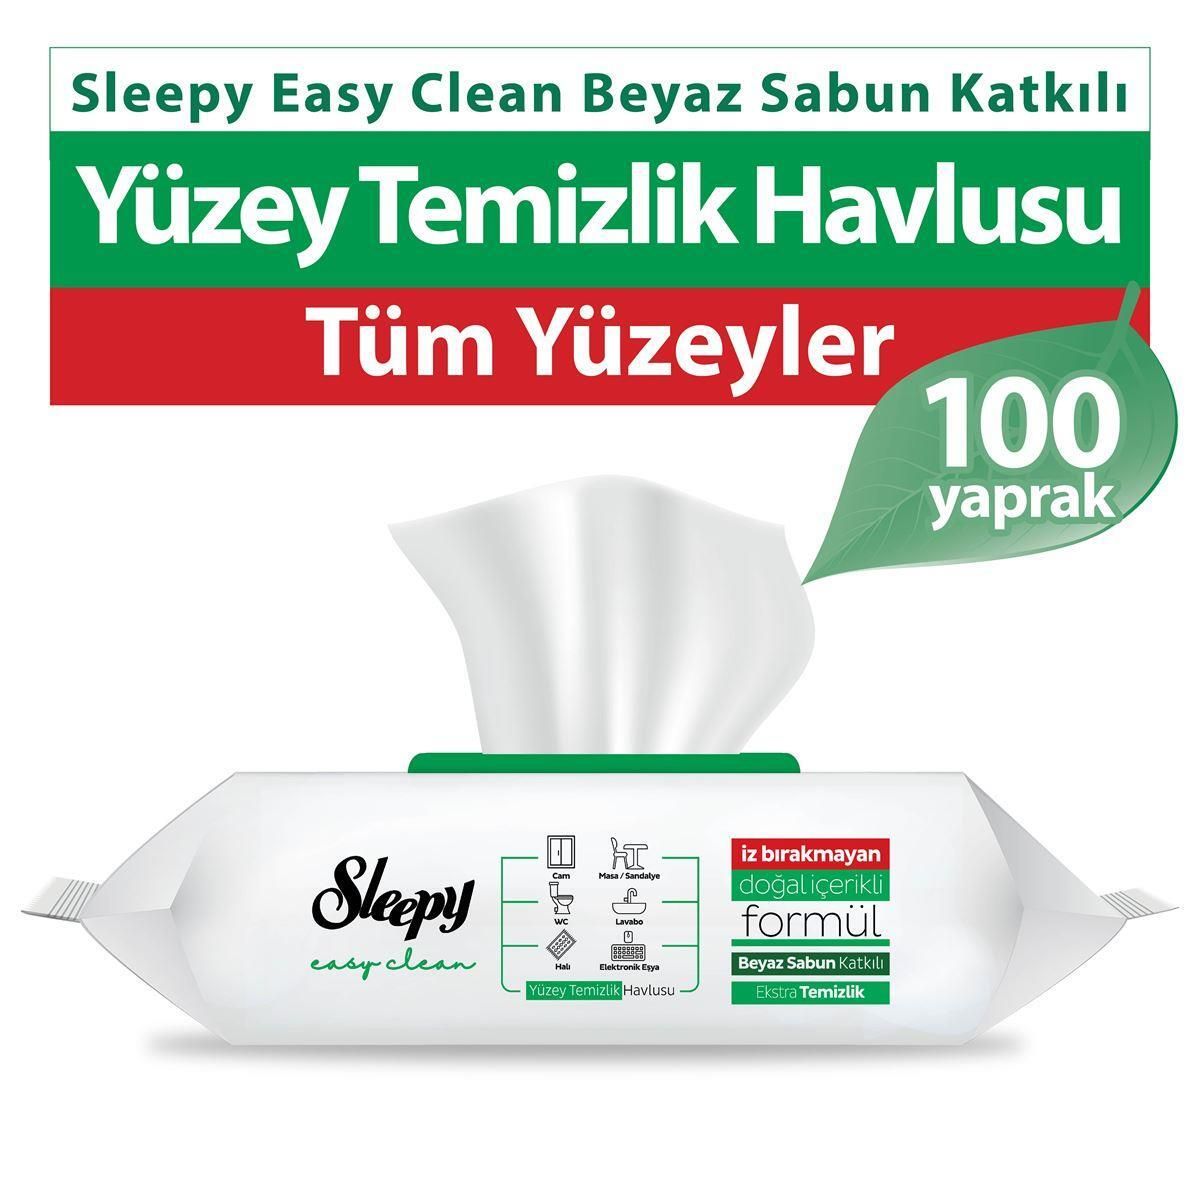 Sleepy Easy Clean Beyaz Sabun Katkılı Yüzey Temizlik Havlusu 100 Lü